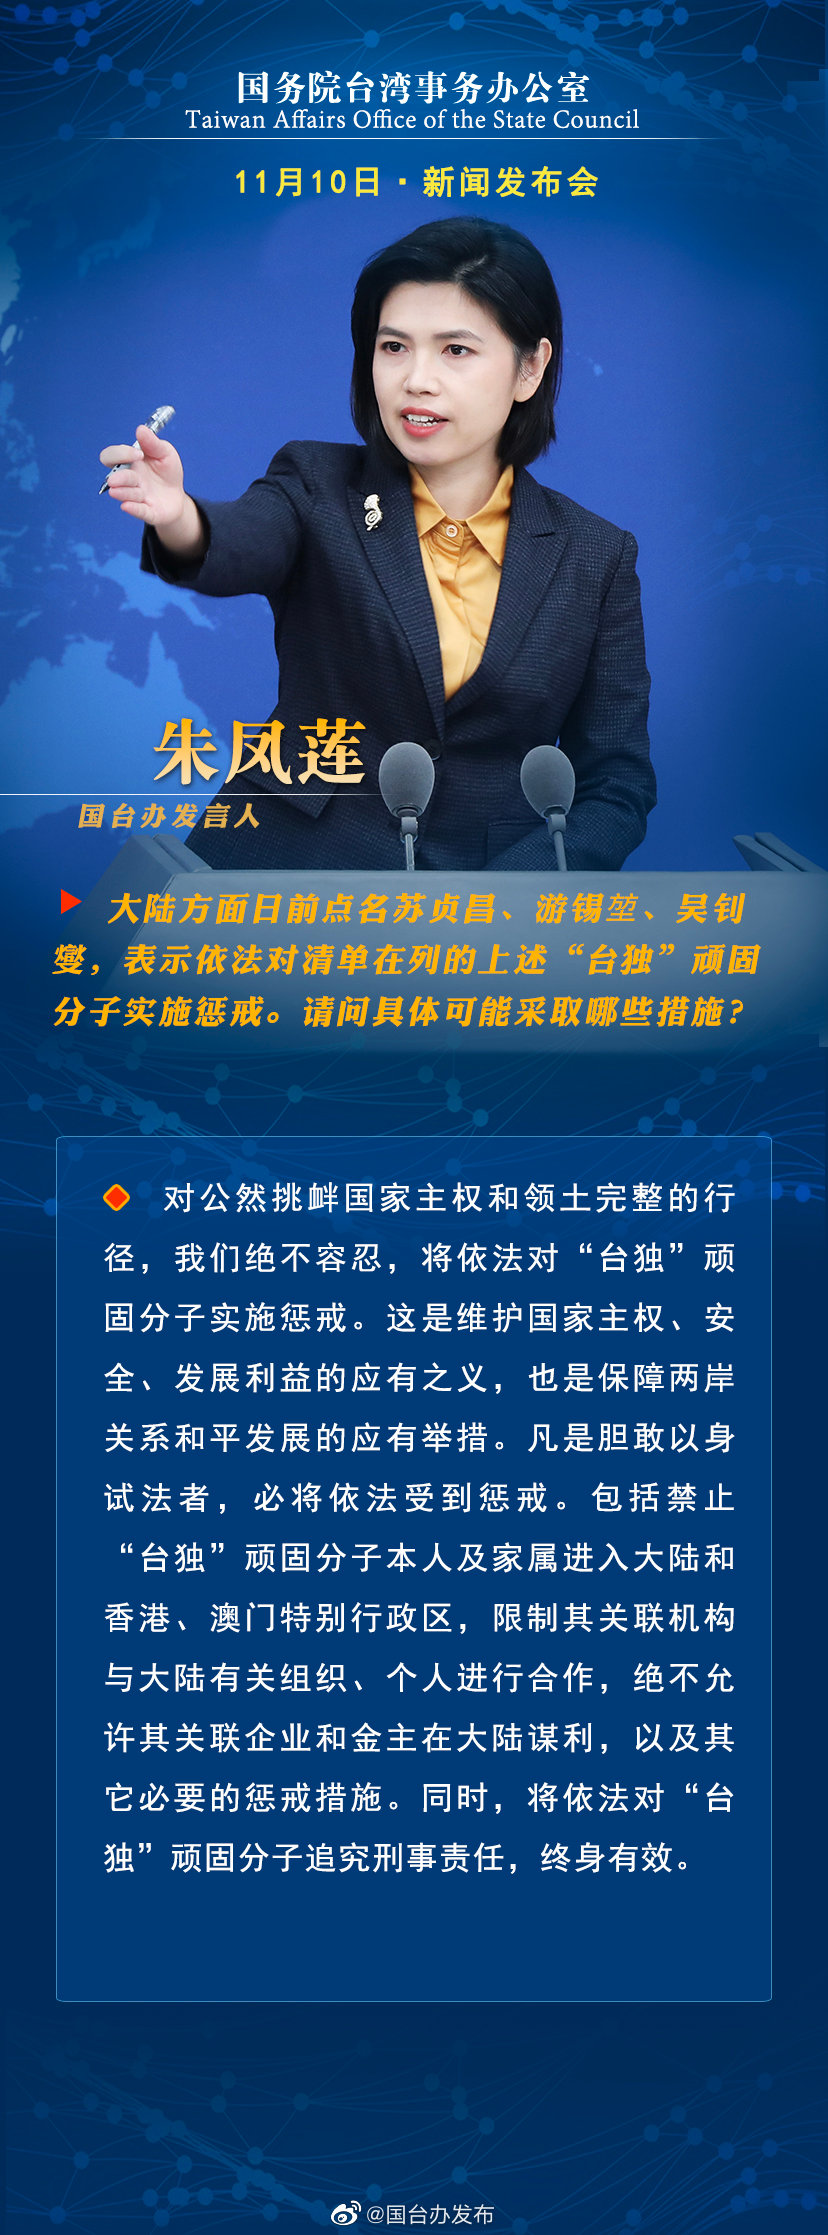 国务院台湾事务办公室11月10日·新闻发布会